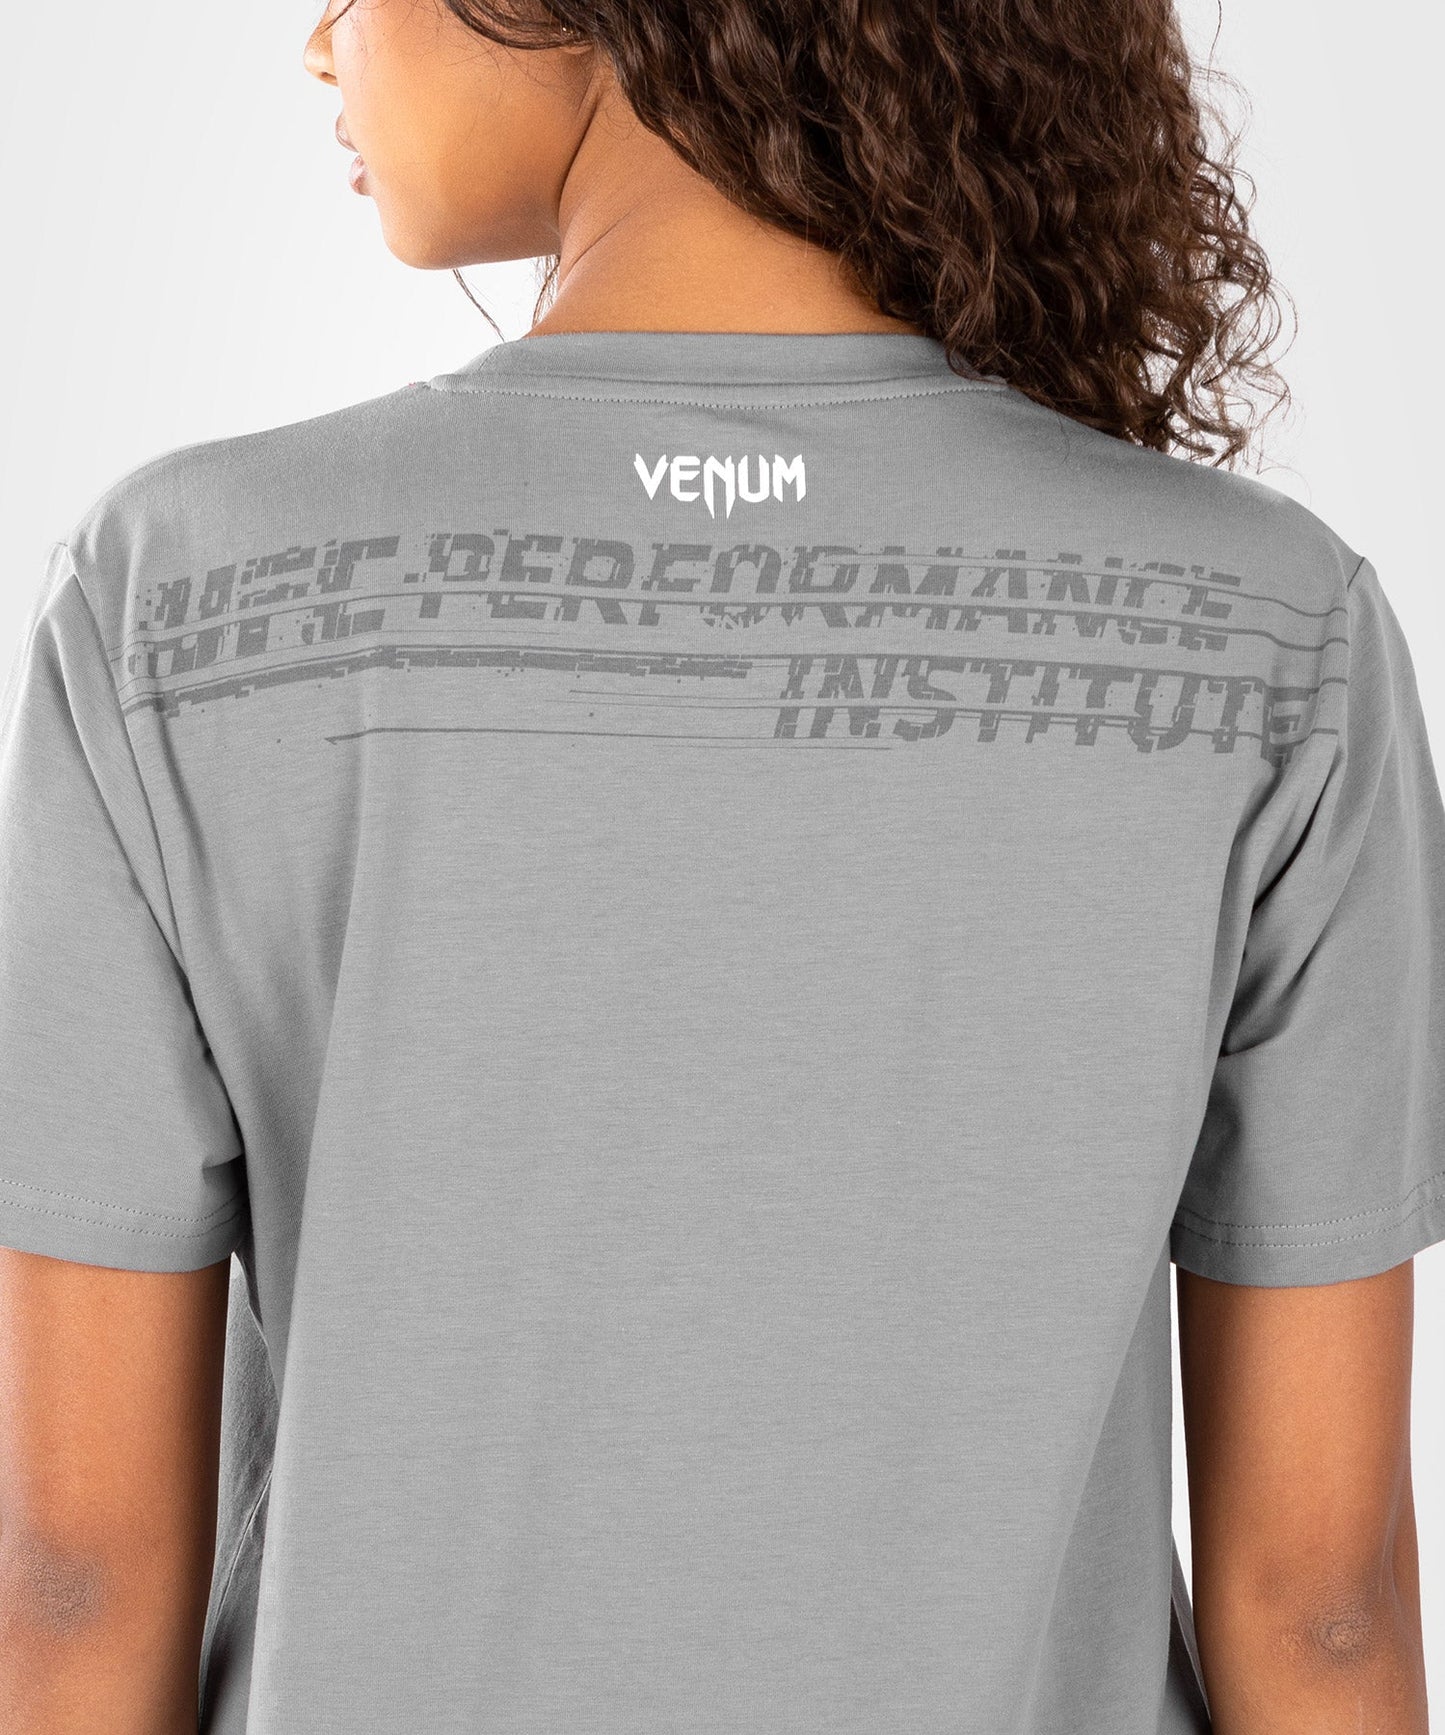 UFC Venum Performance Institute 2.0  Damen T-Shirt - Grau